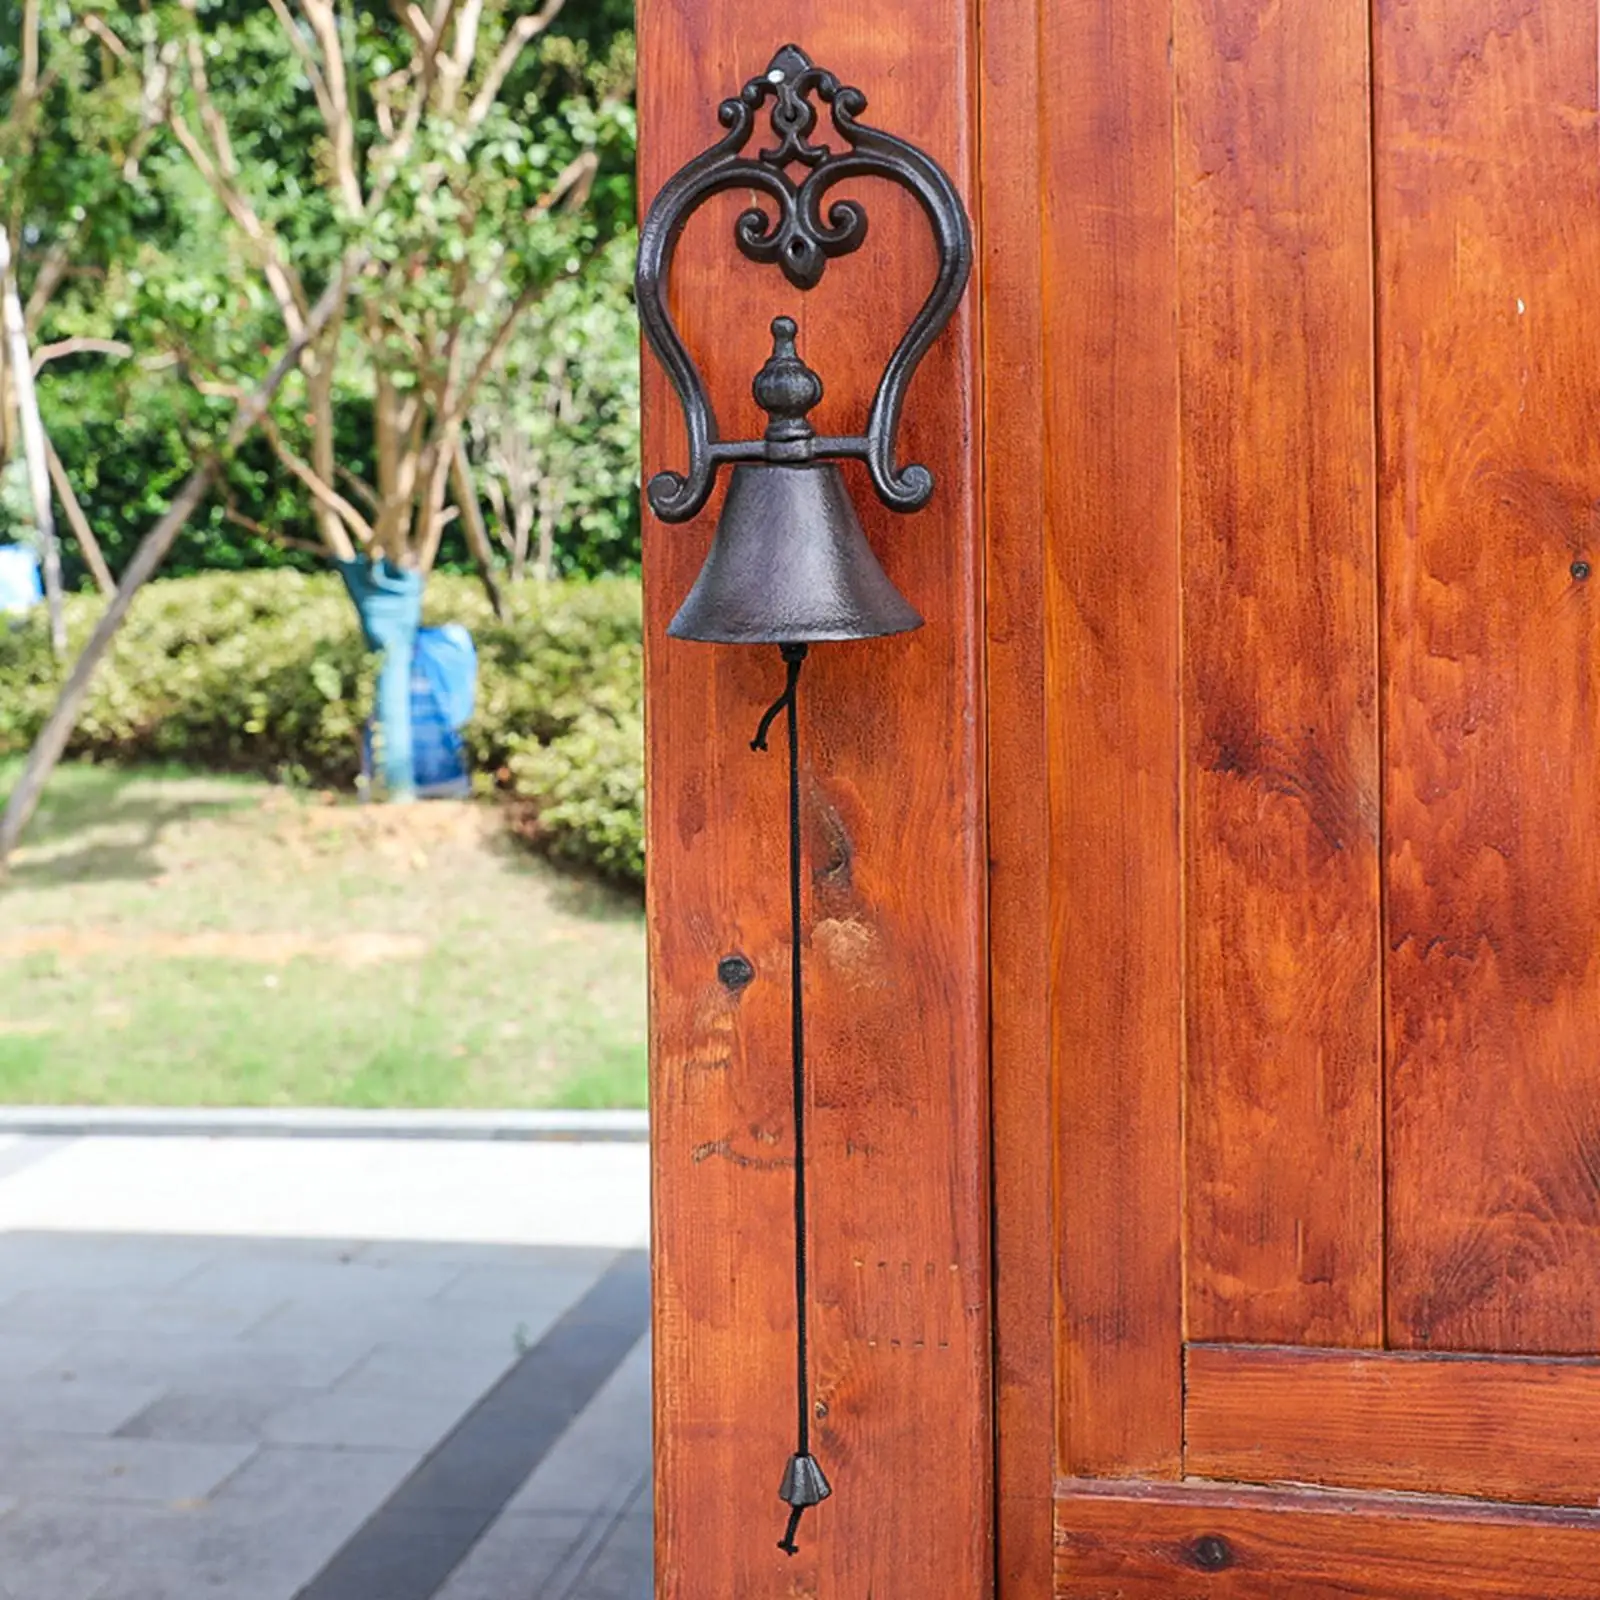 Door Bell Manually Shaking Doorbells Retro Metal Bell Wall Mounted Hanging Door Bells for Indoor Outdoor Home Decoration